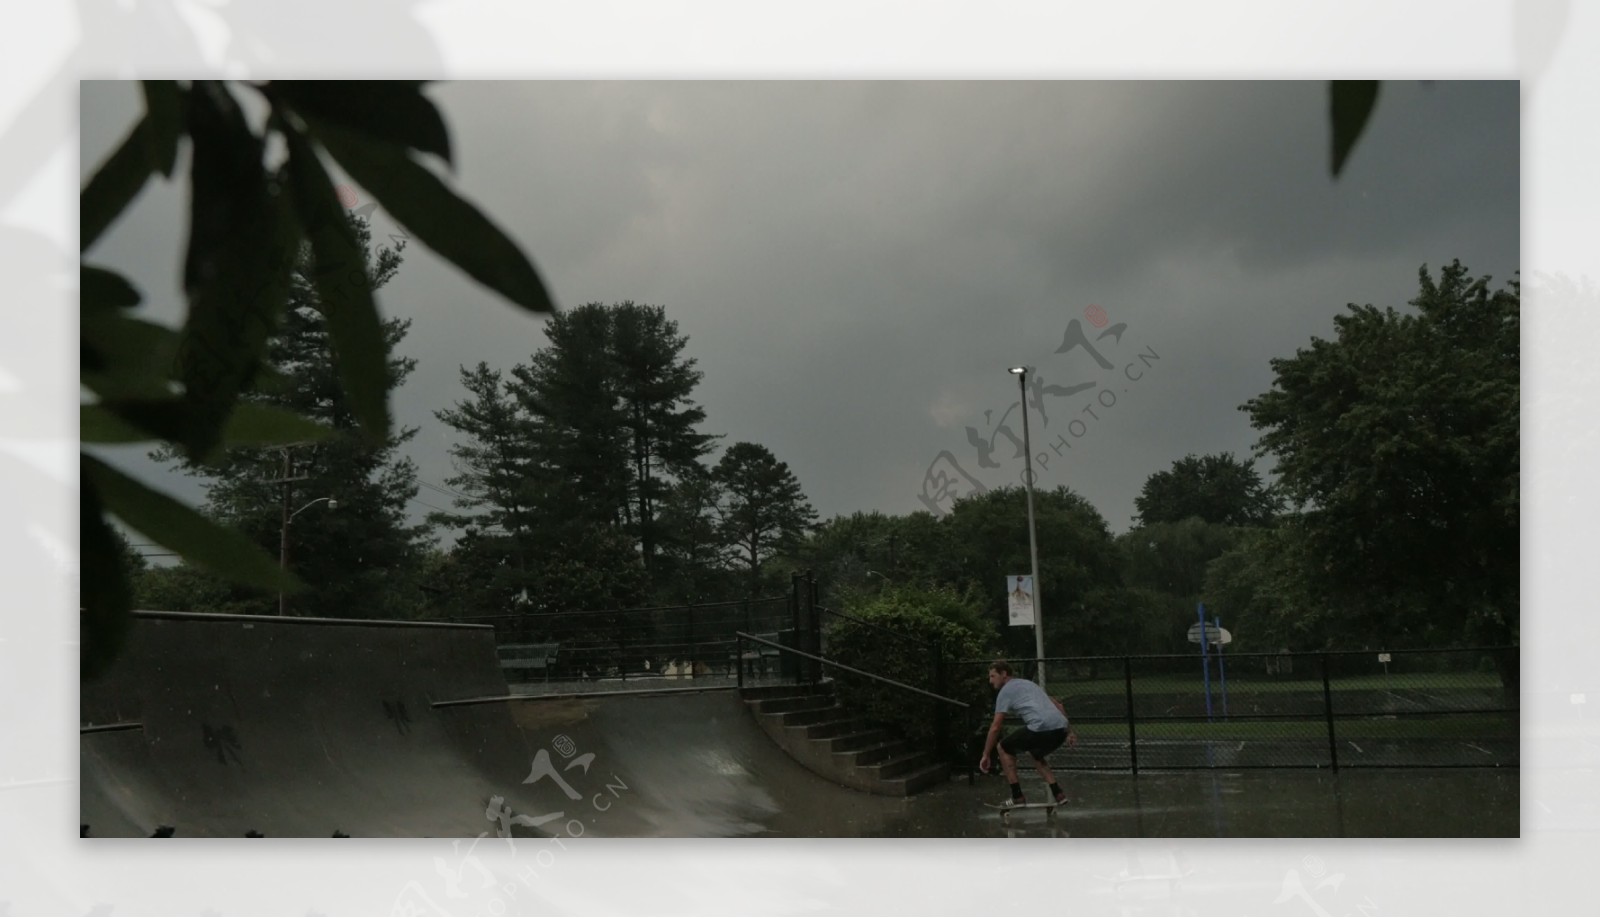 雨中滑板1